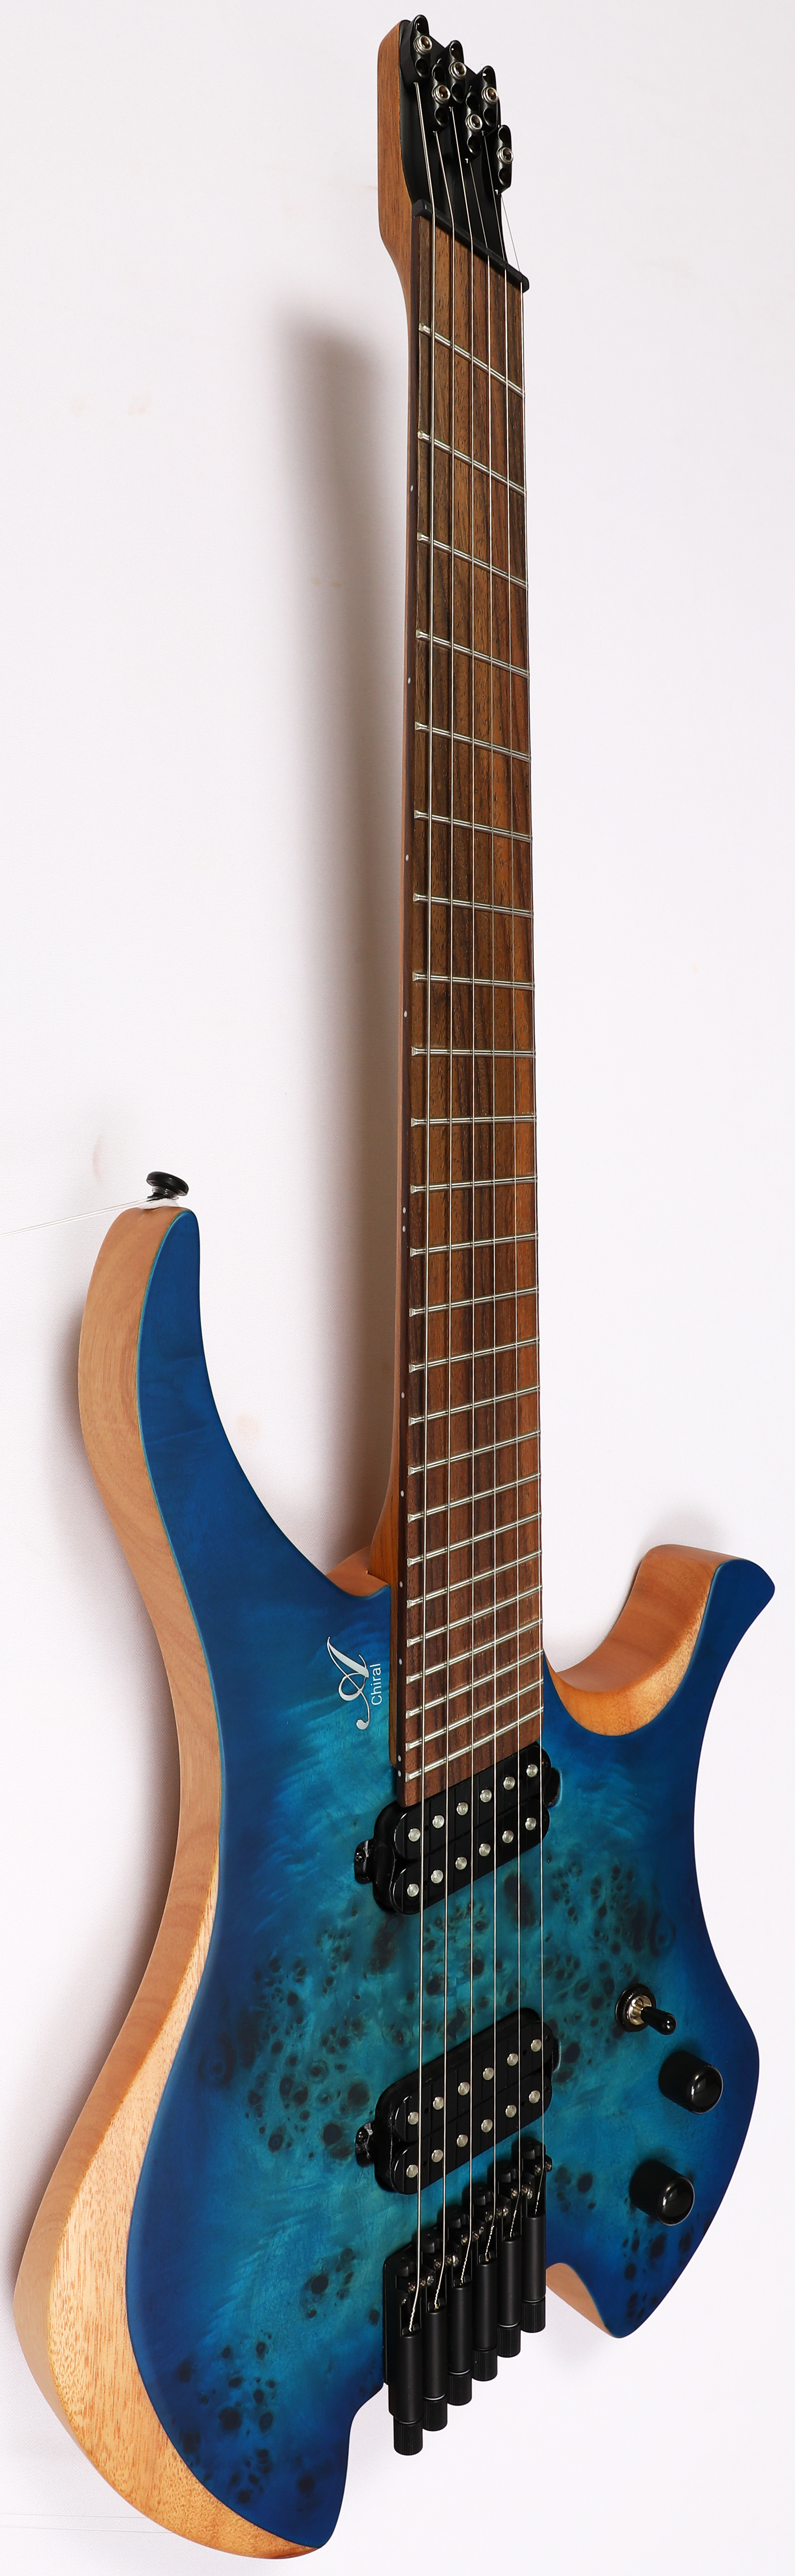 Agile Chiral Parallax 62527 RN Oceanburst Flame Headless Guitar